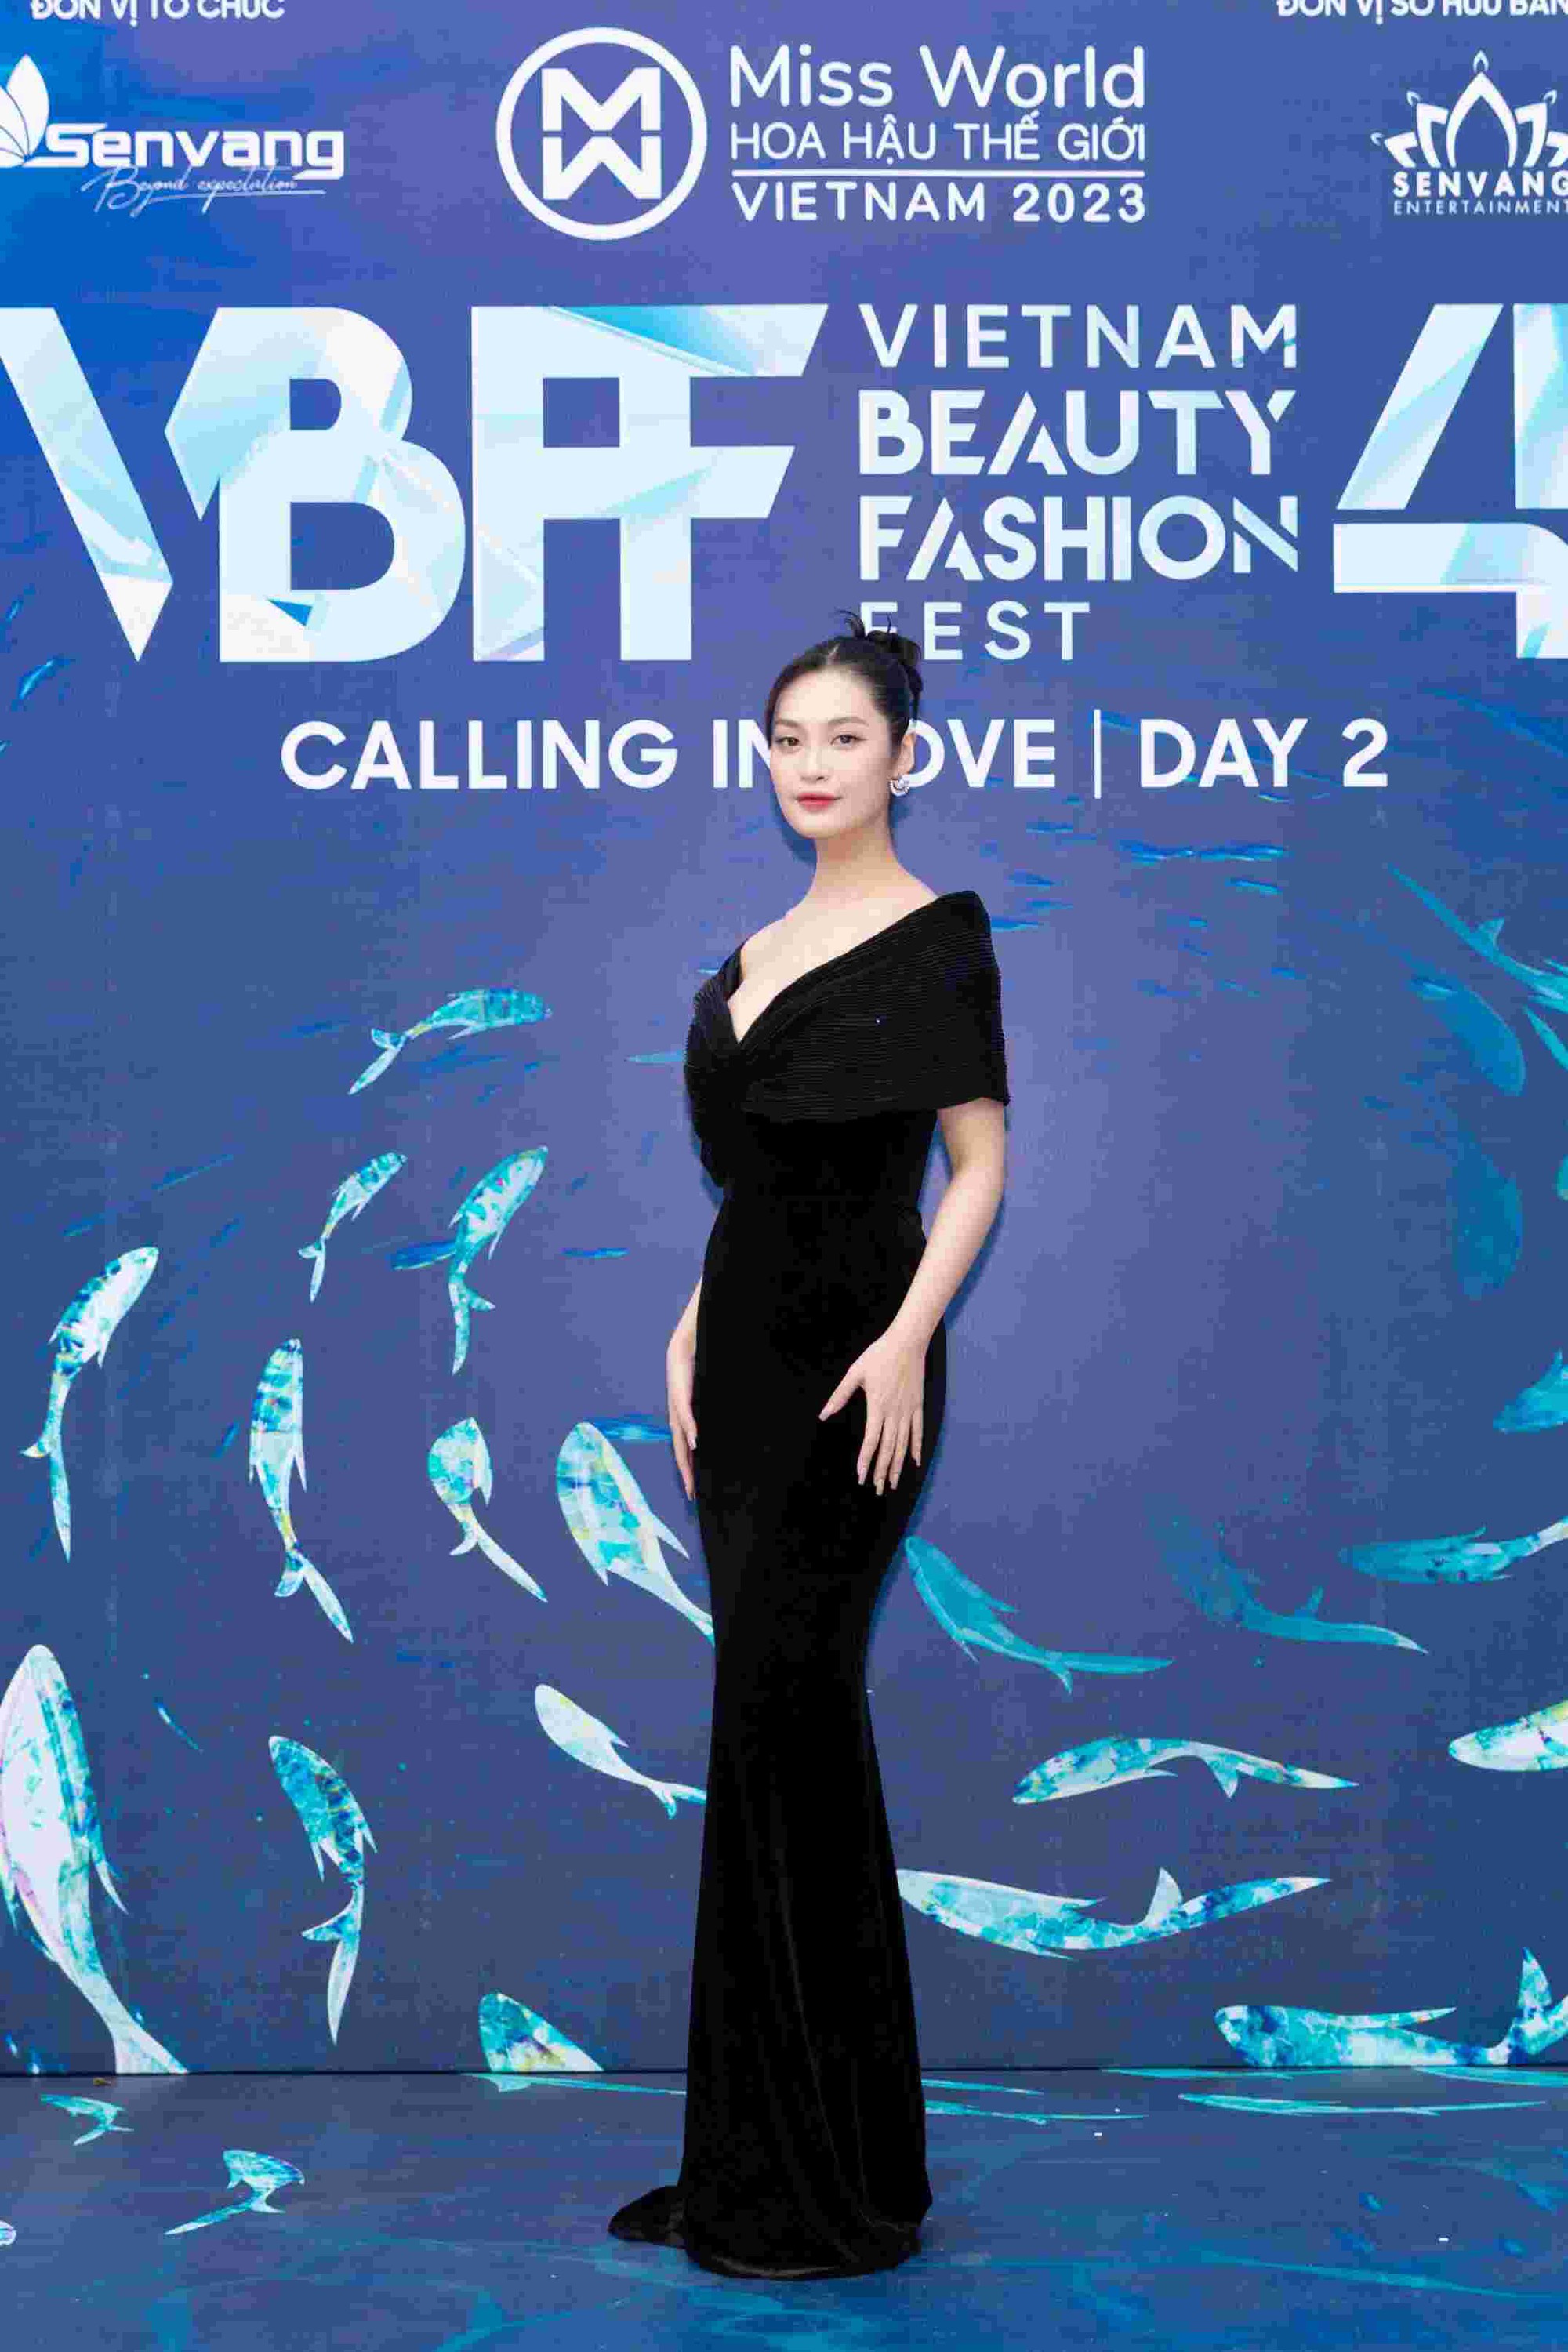 Đông đảo người đẹp khoe sắc trên thảm đỏ Vietnam Beauty Fashion Fest 4  - Ảnh 10.